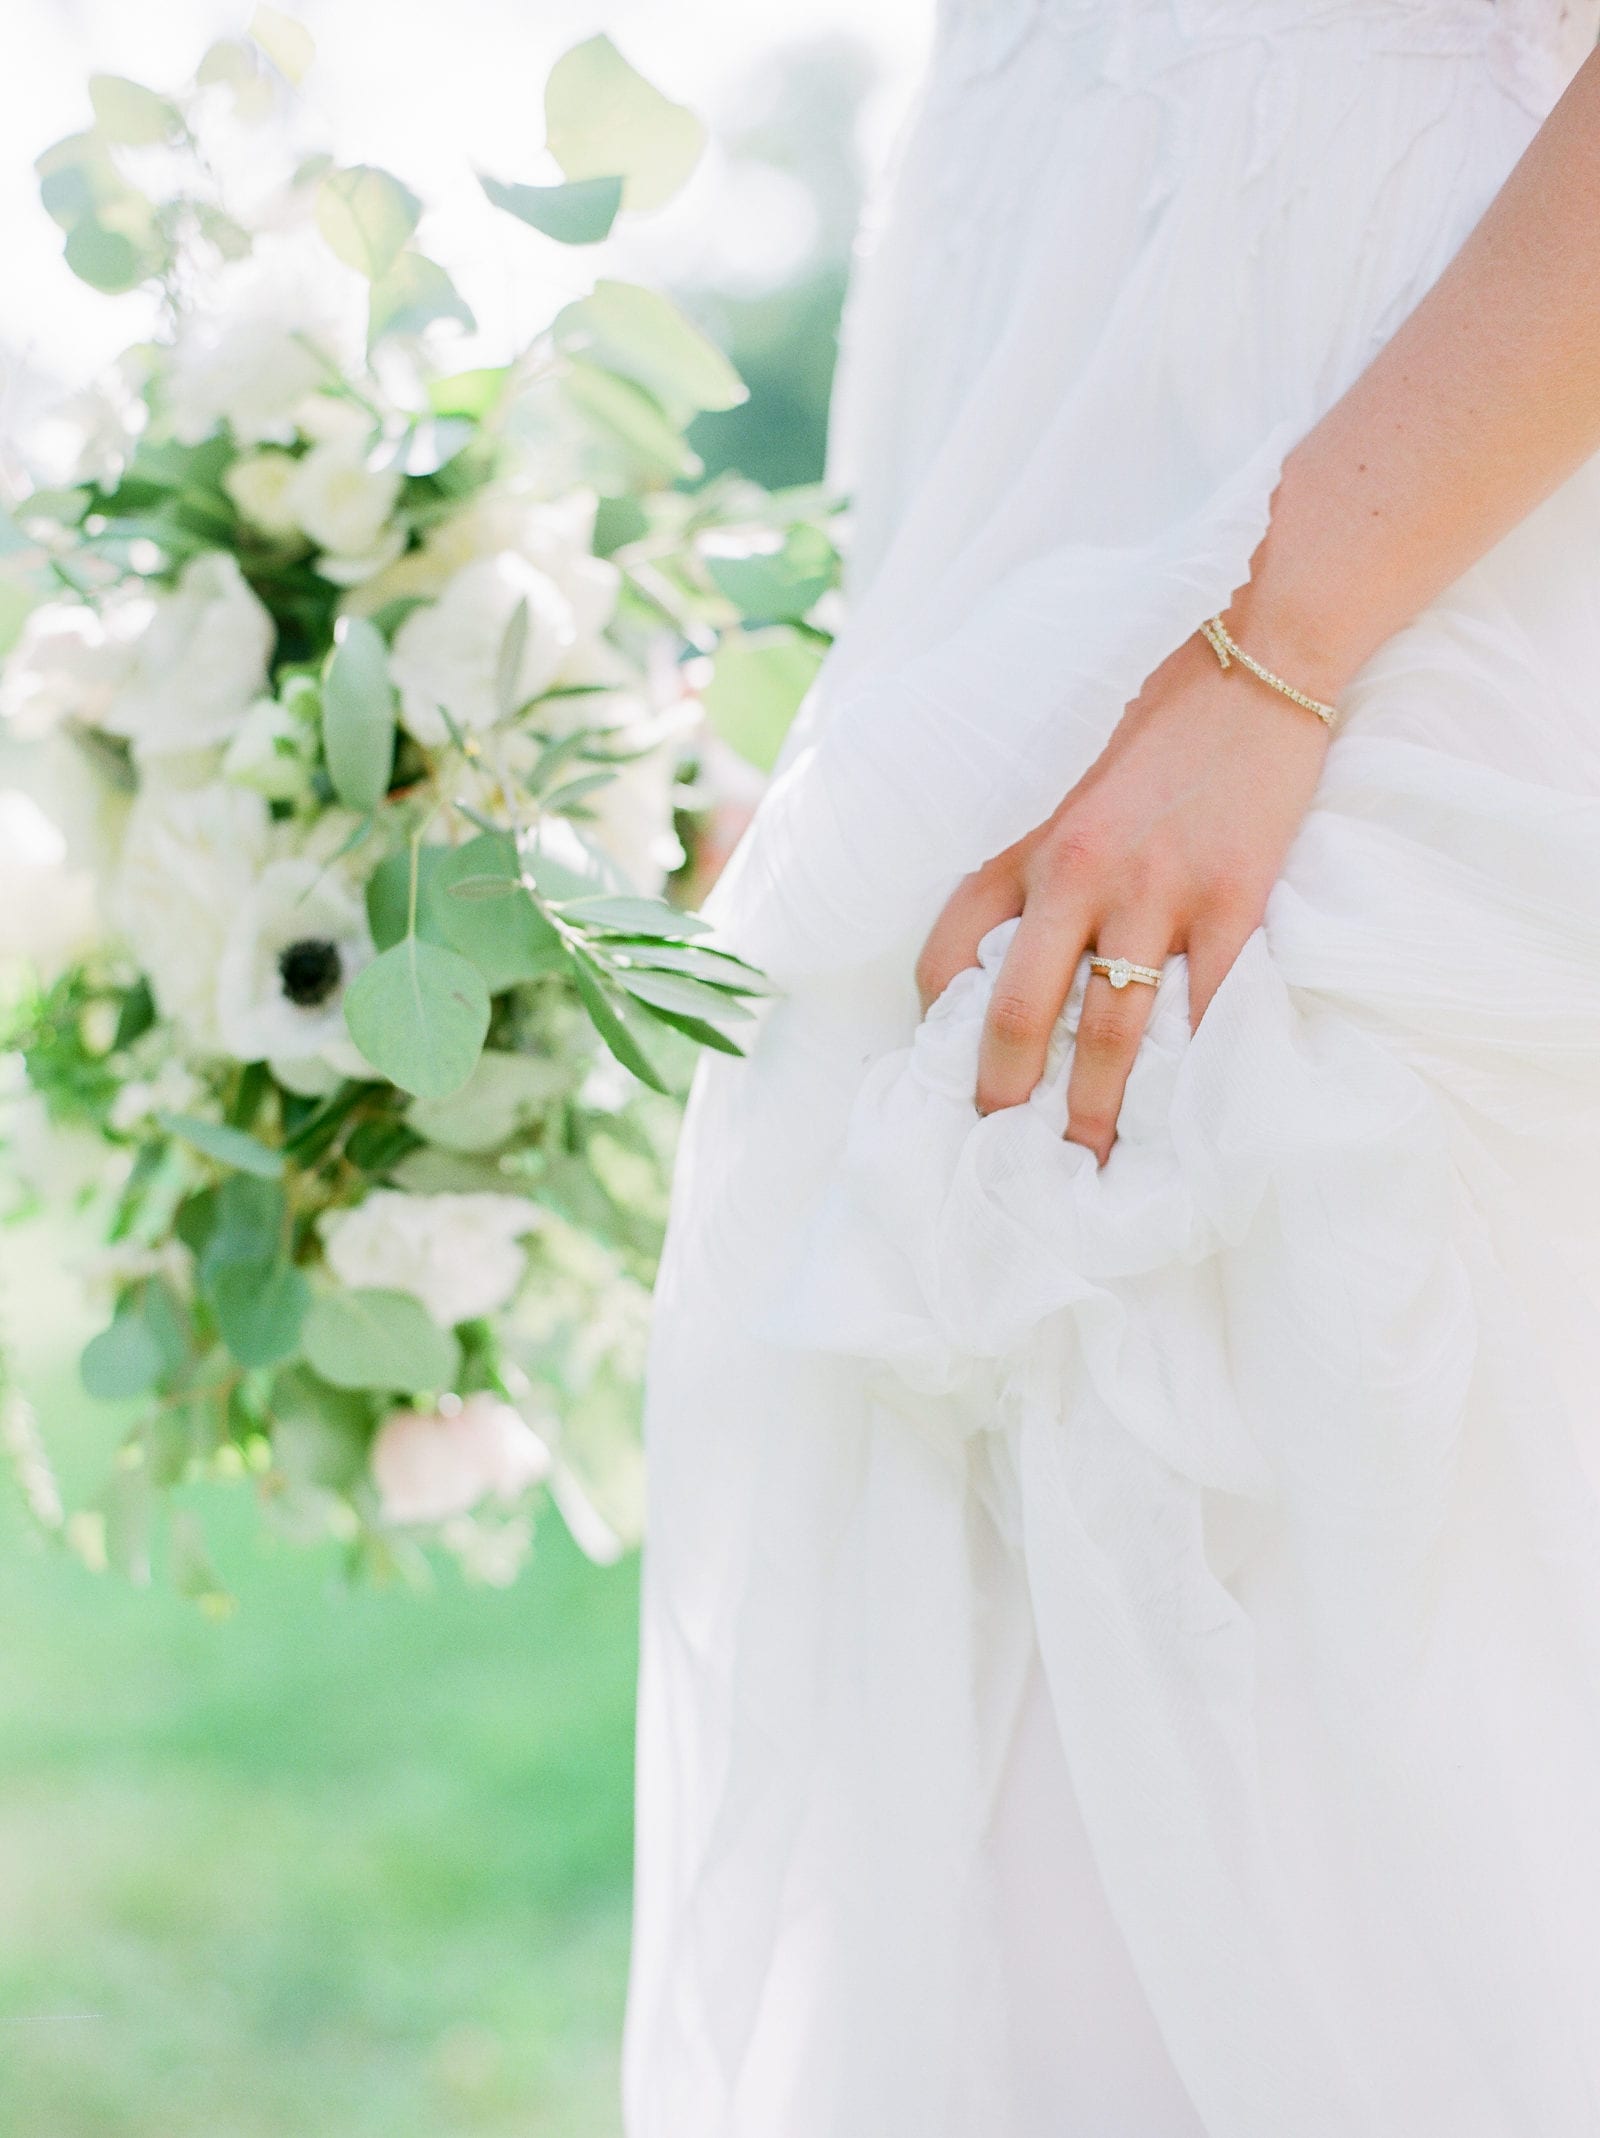 Blue Dress Barn wedding and bridal bouquet